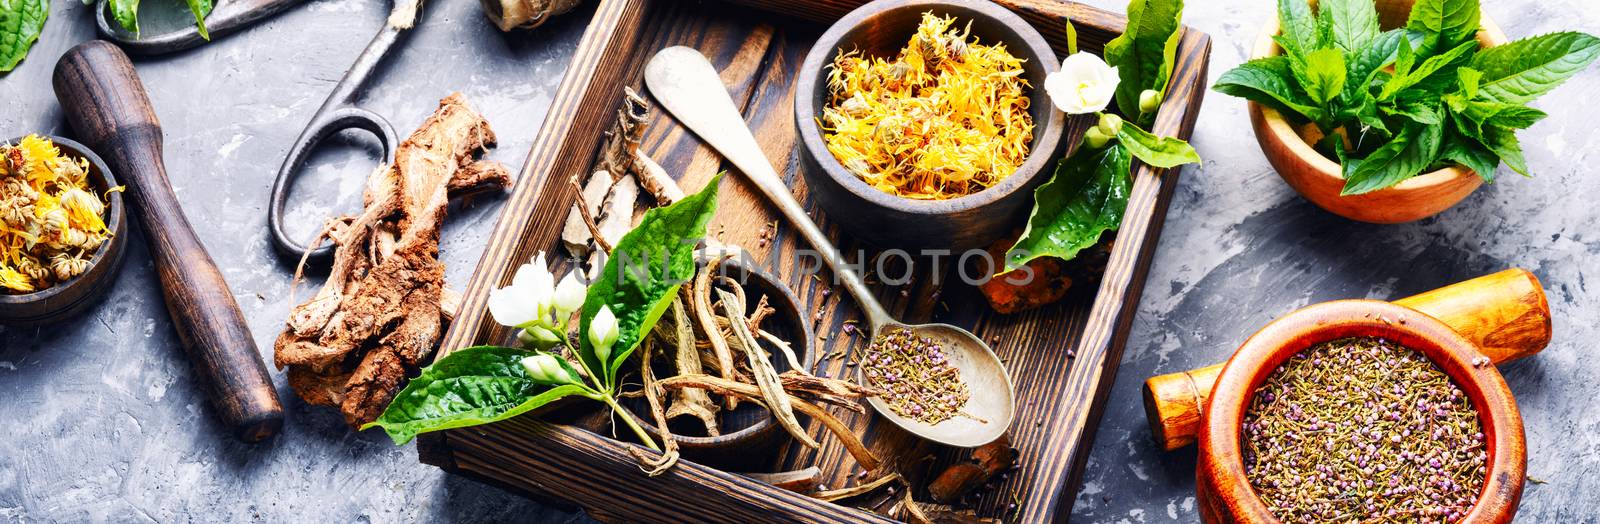 Natural herbal medicine,medicinal herbs and herbal medicinal root.Natural herbs medicine.Healing herbs